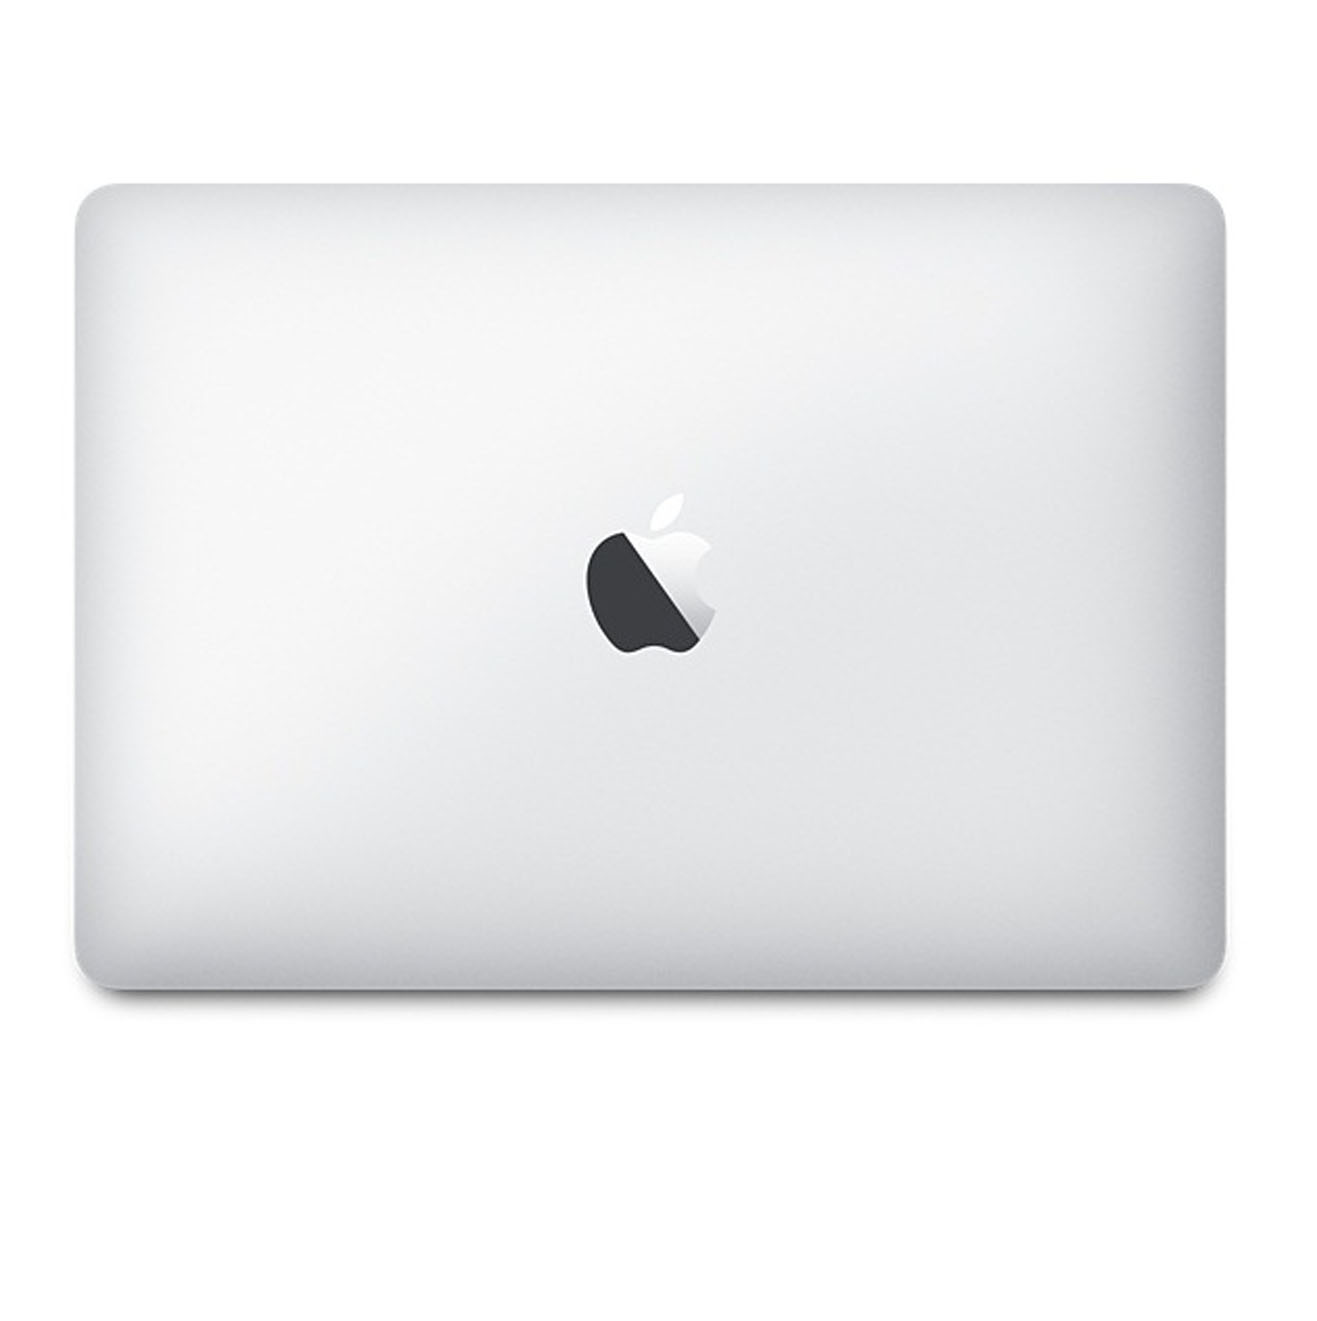 Apple Macbook MLHA2 256Gb- (2016) - Core M3 6Y30/ 8Gb/ 256Gb SSD/ 12.0Inch